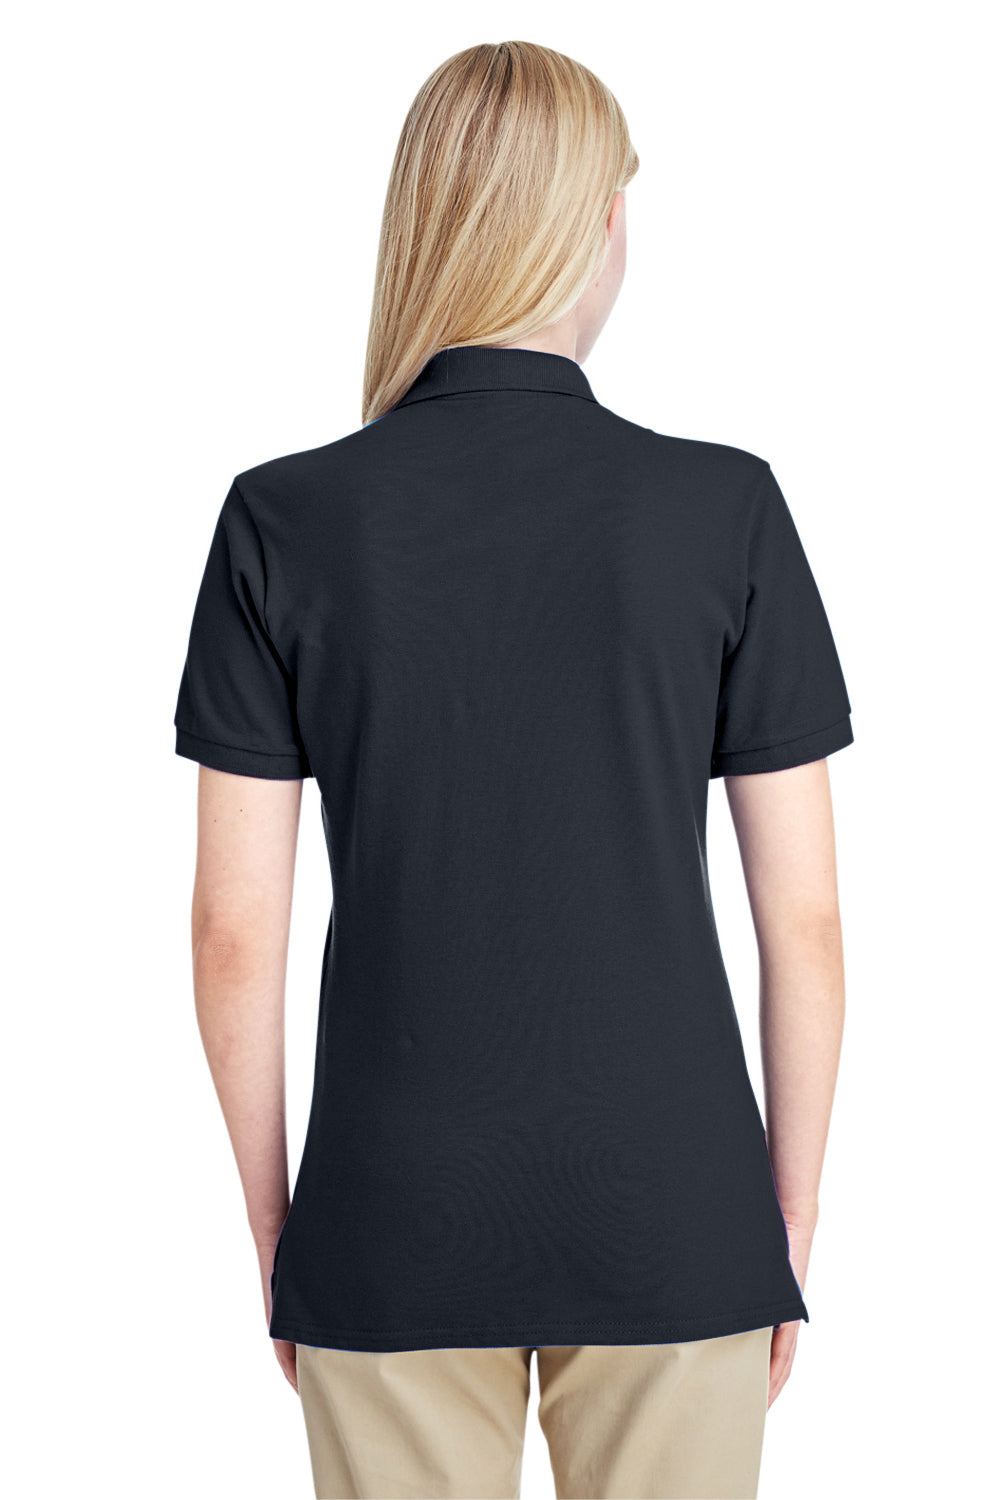 Jerzees 443WR Womens Short Sleeve Polo Shirt Black Back